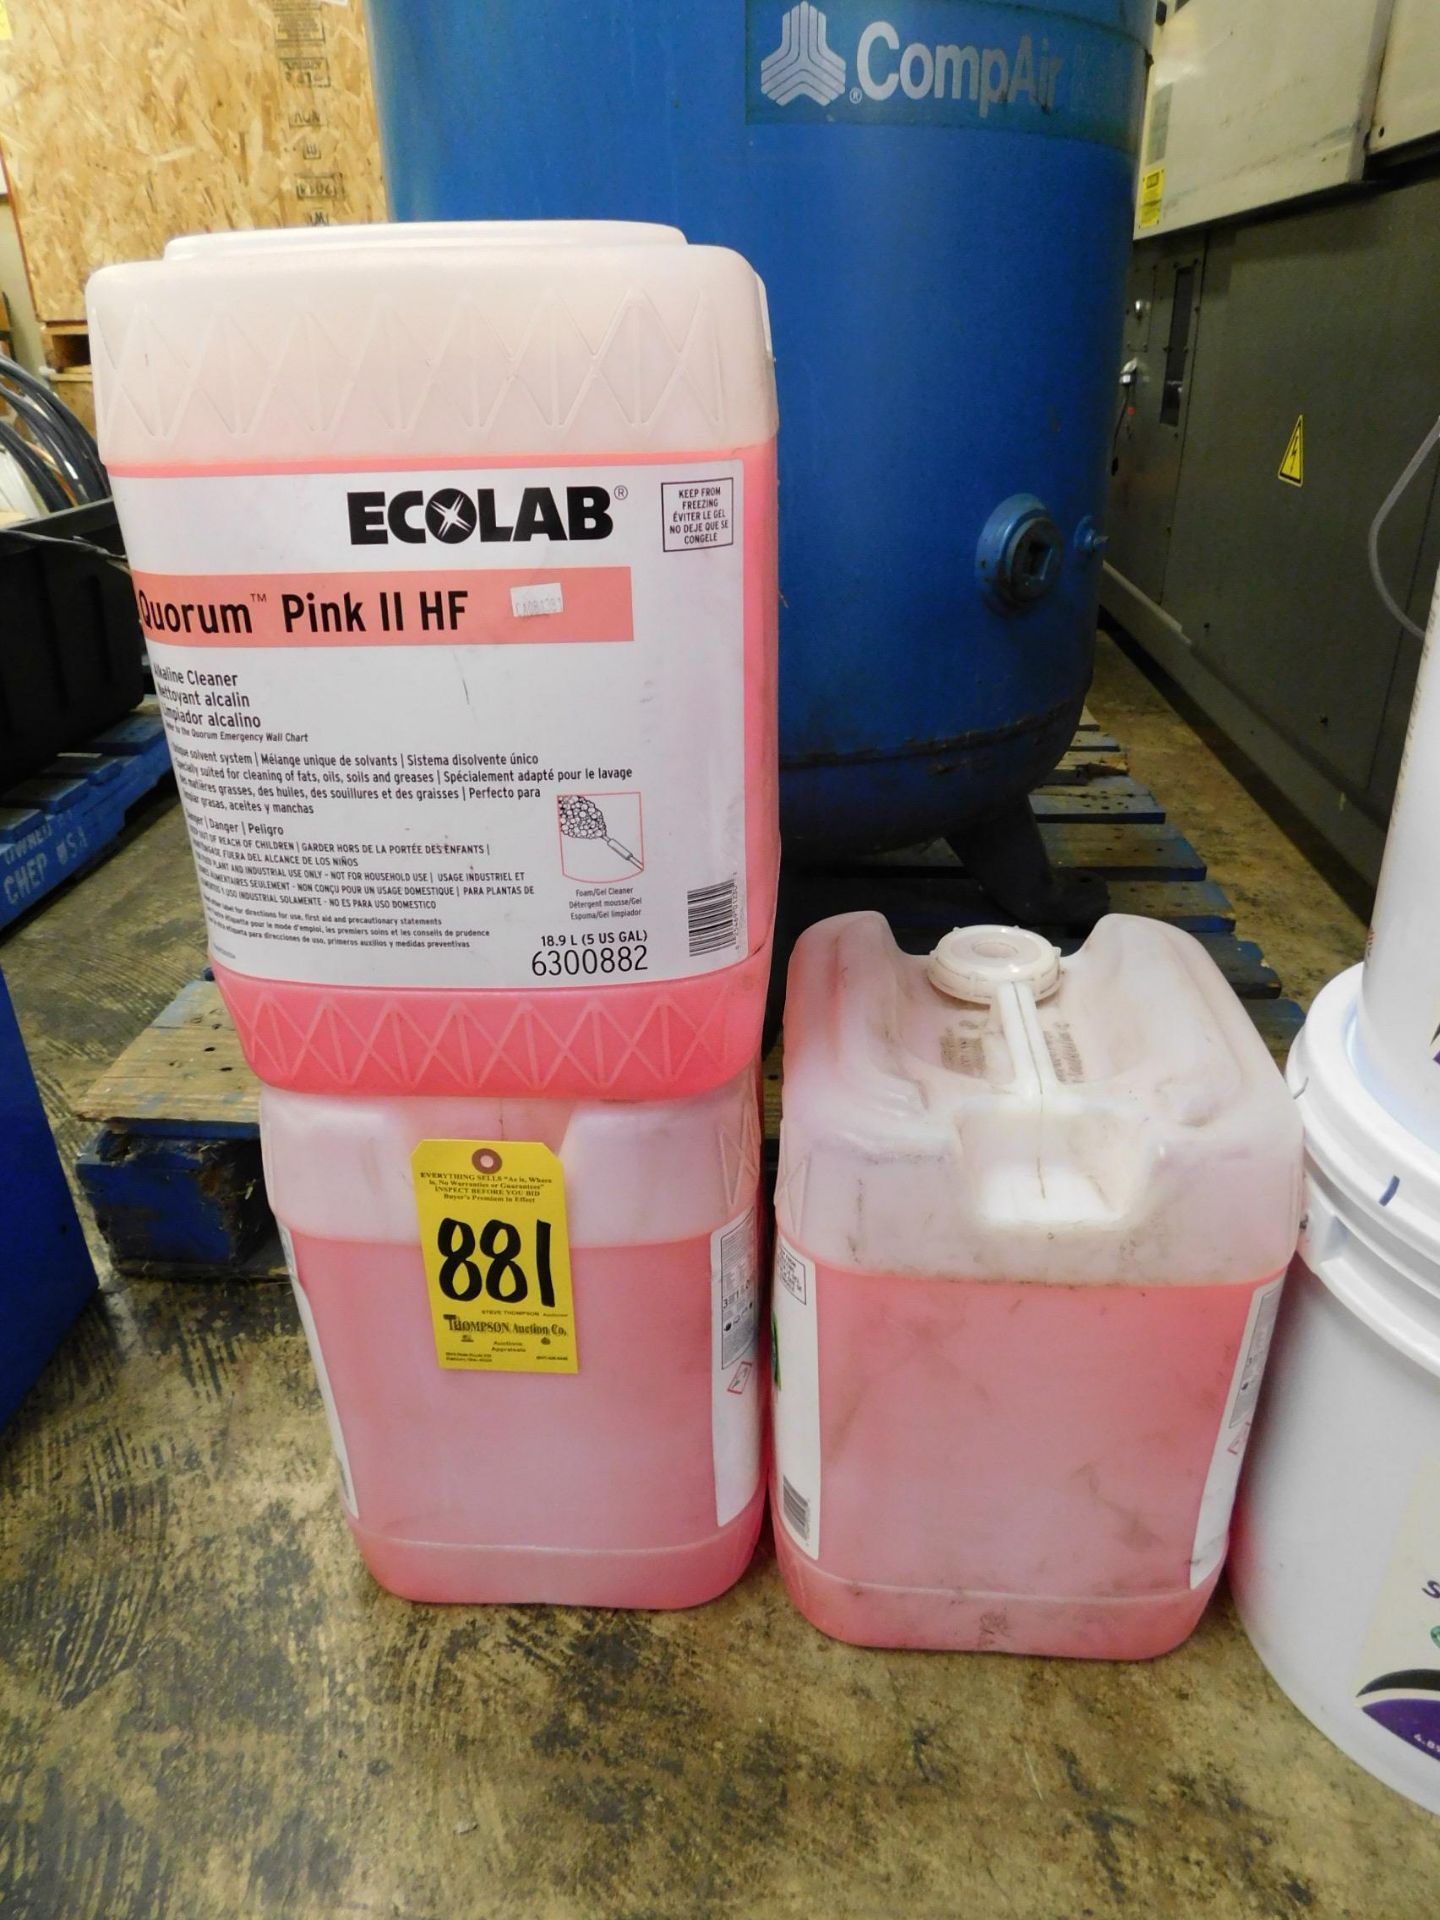 EcoLab Quorum Pink II HF Alkaline Cleaner (3) 5 gallon Jugs